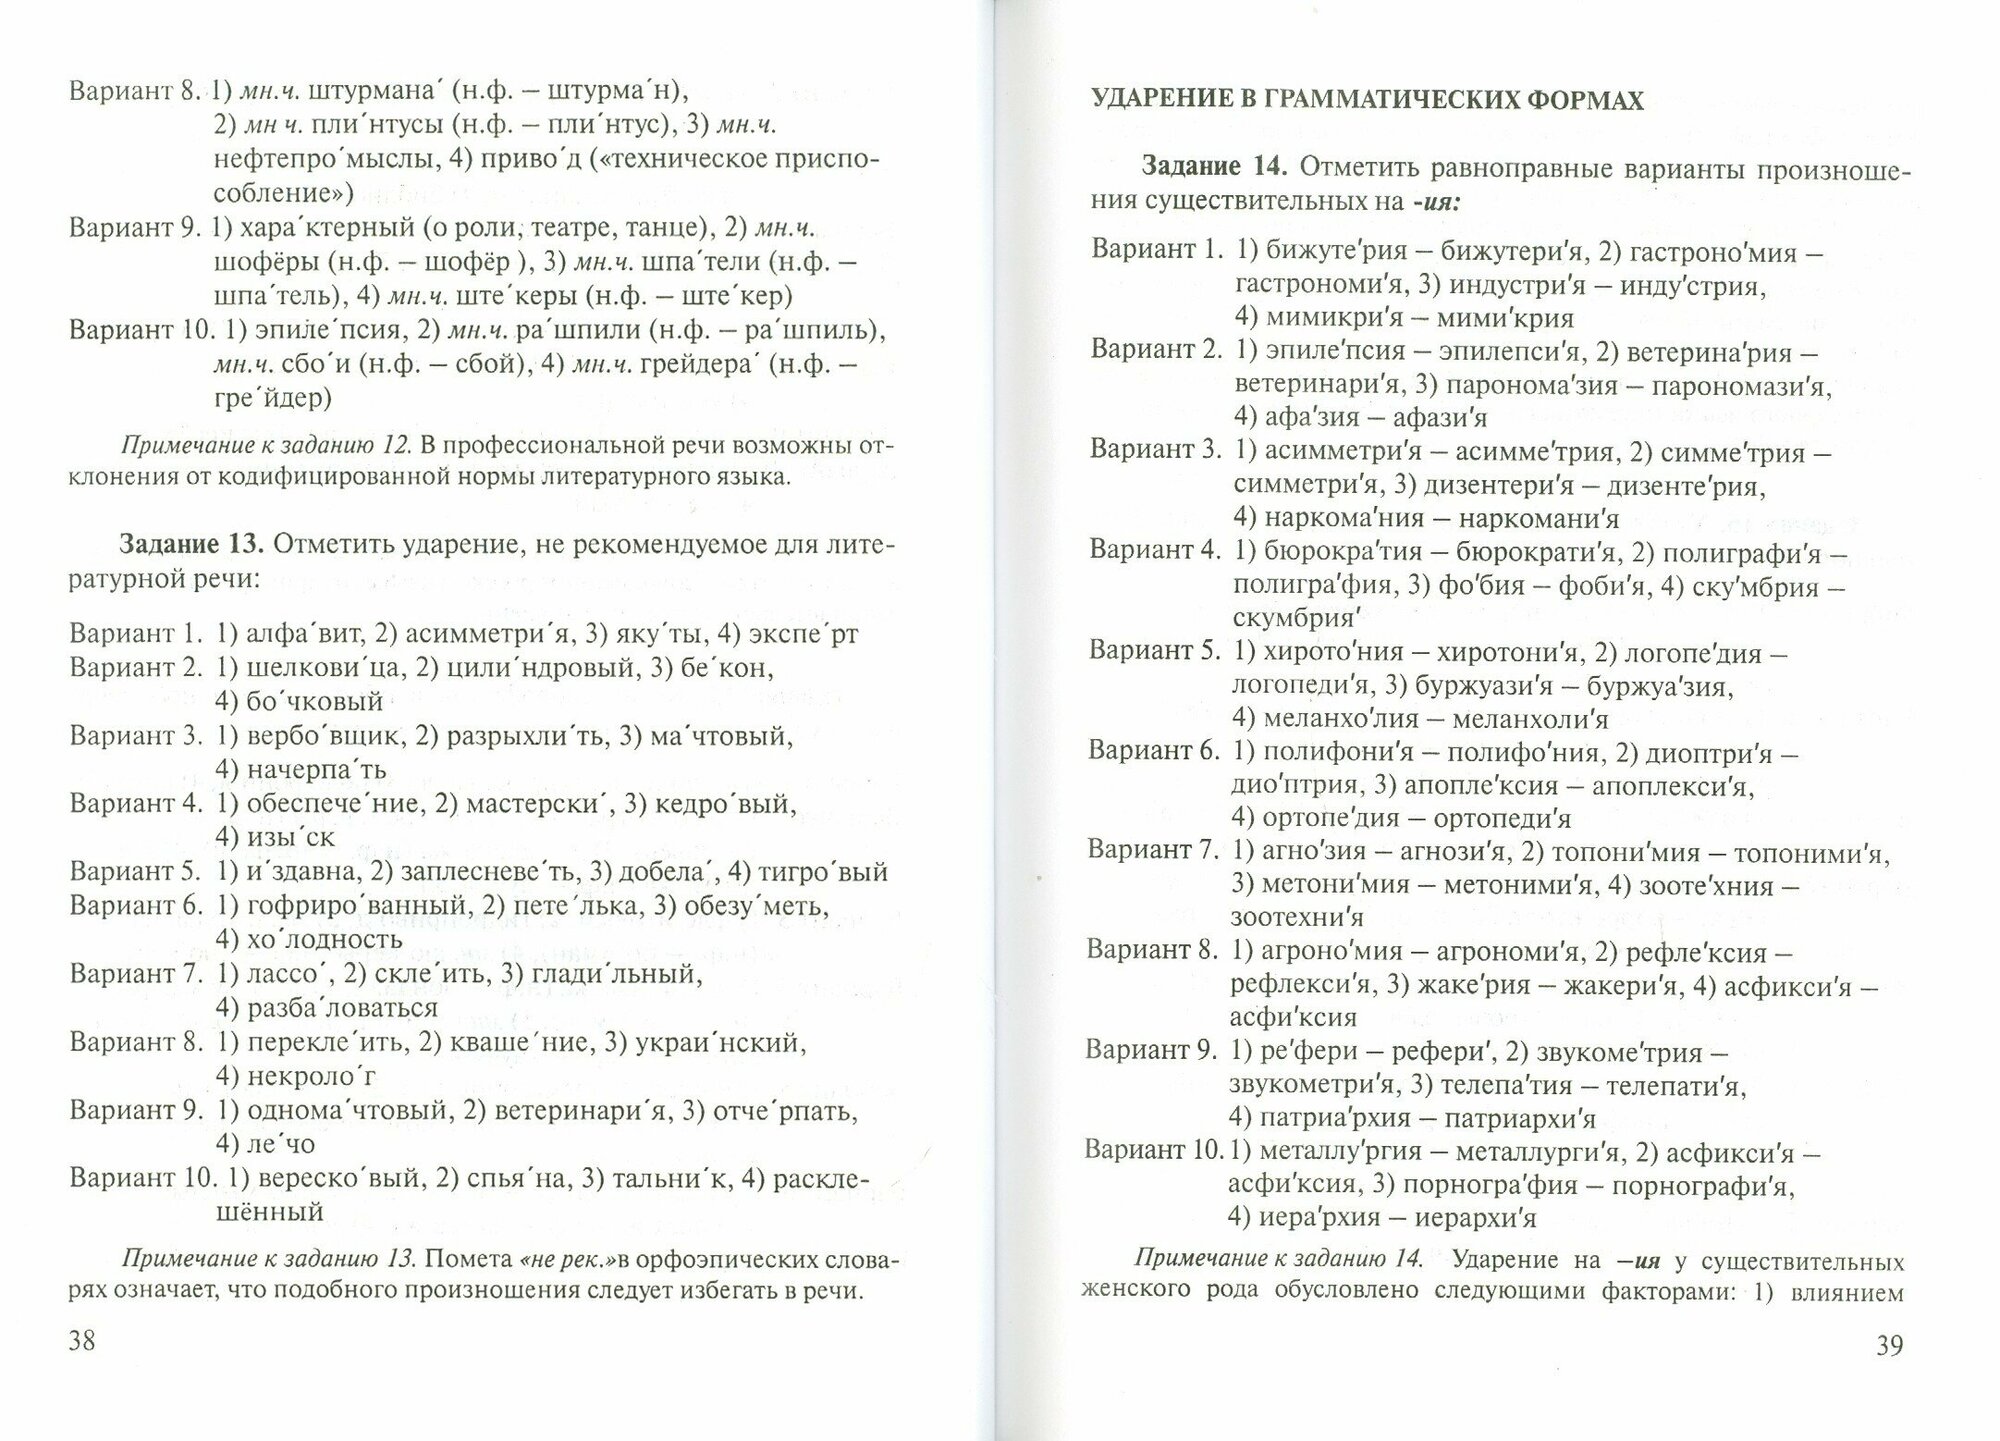 Русский язык. Нормы произношения и ударения - фото №3